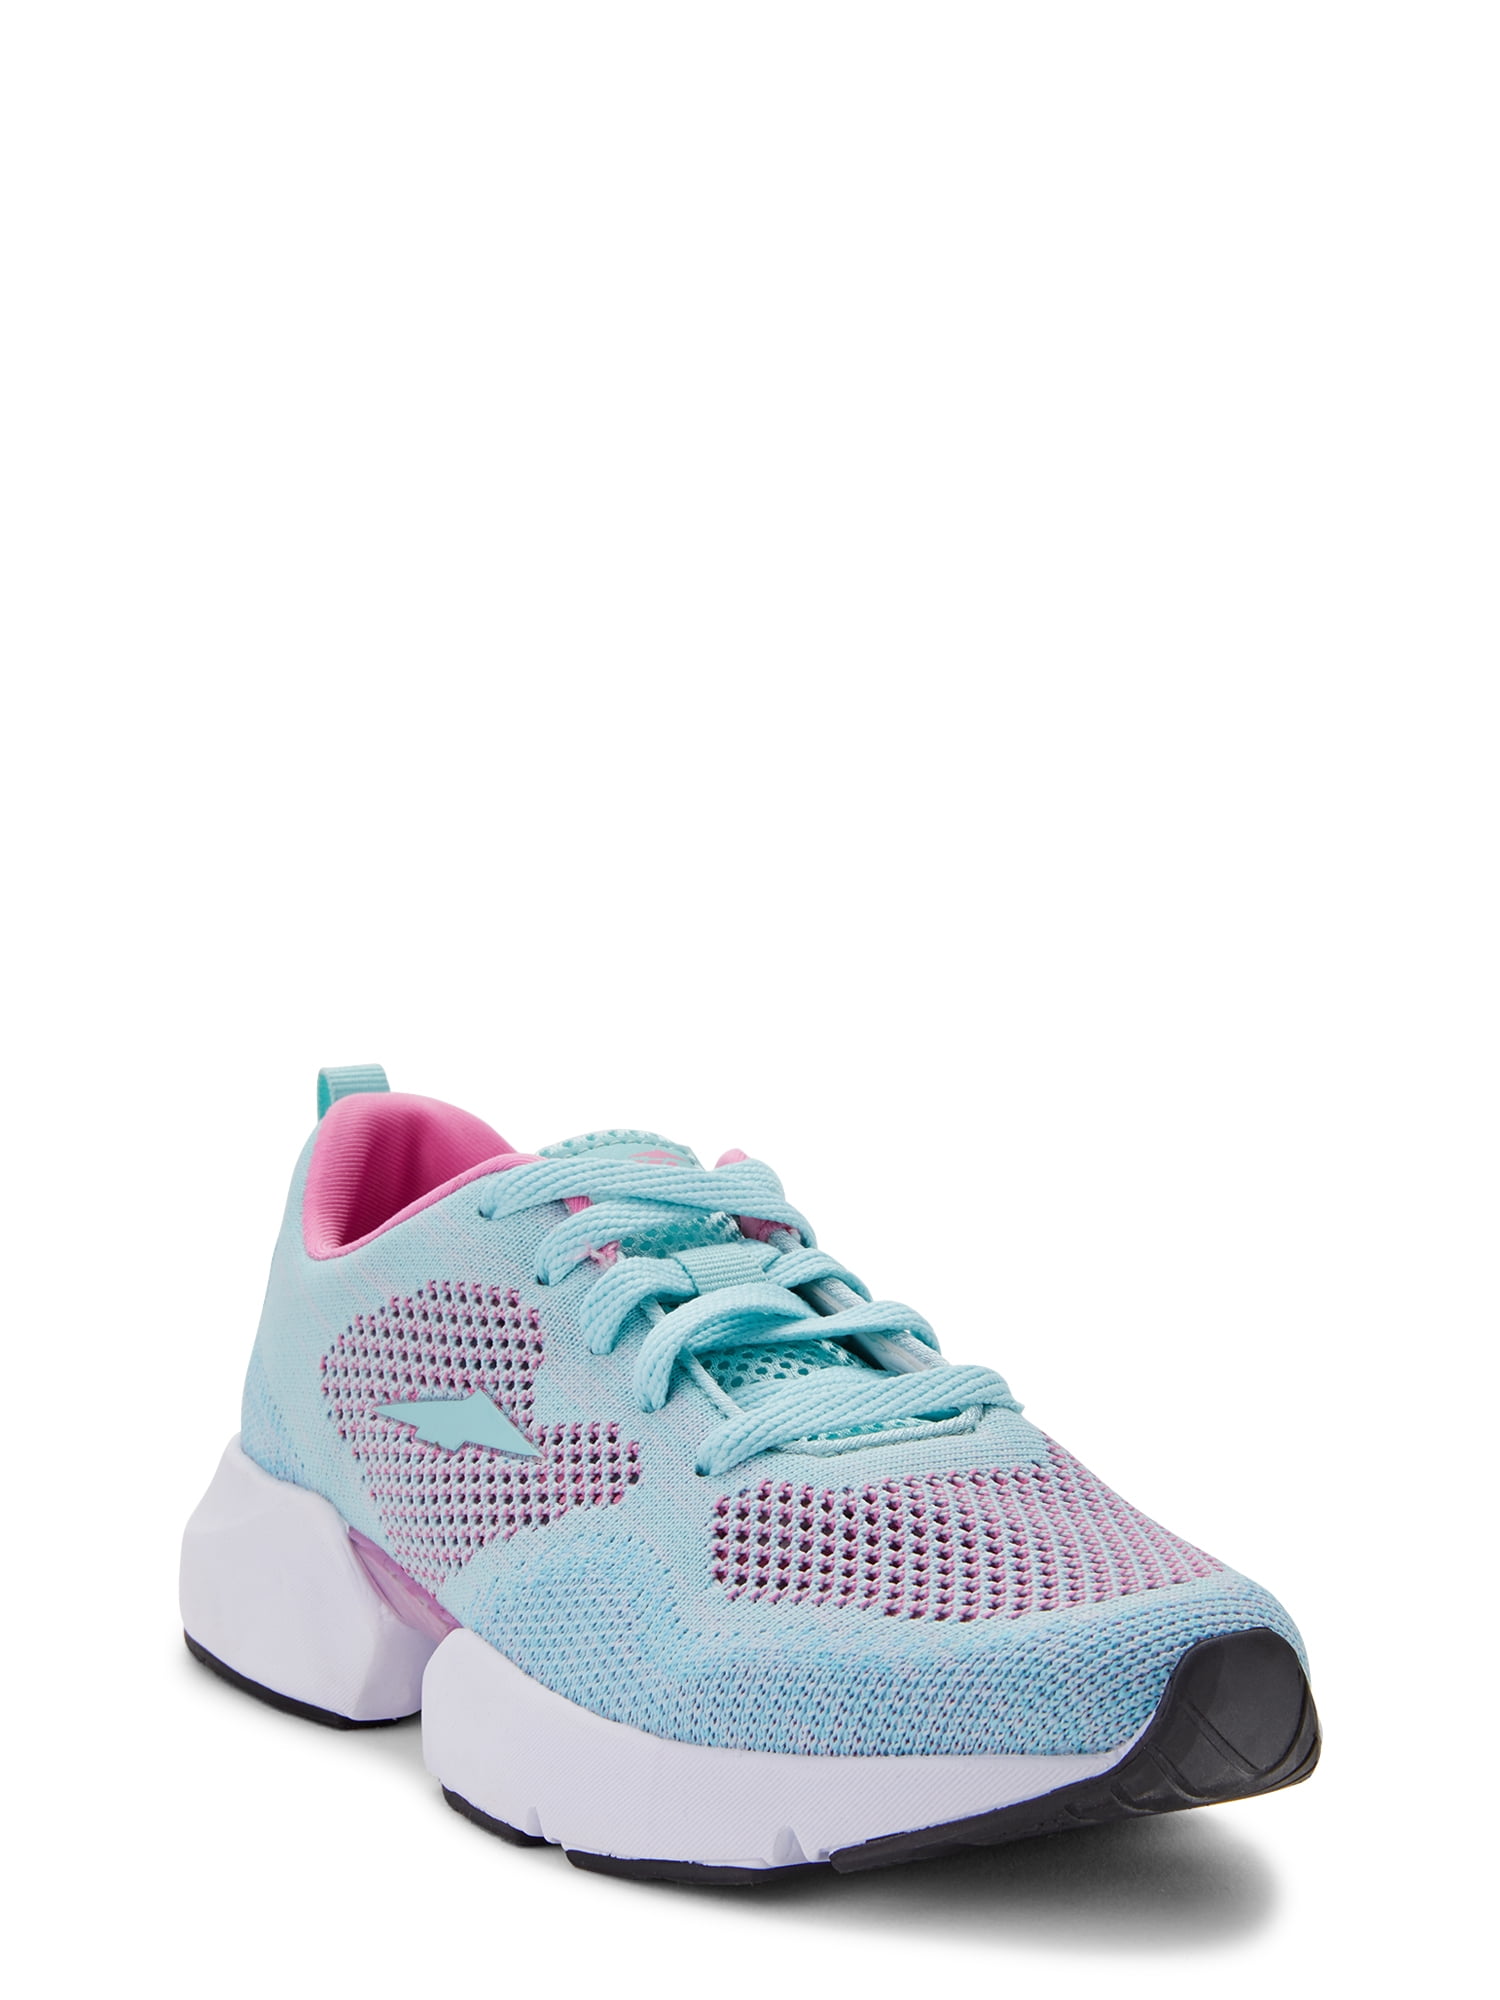 6-11 Avia Women's Pink Memory Foam Slip-on Strap Lightweight Sneakers Shoes